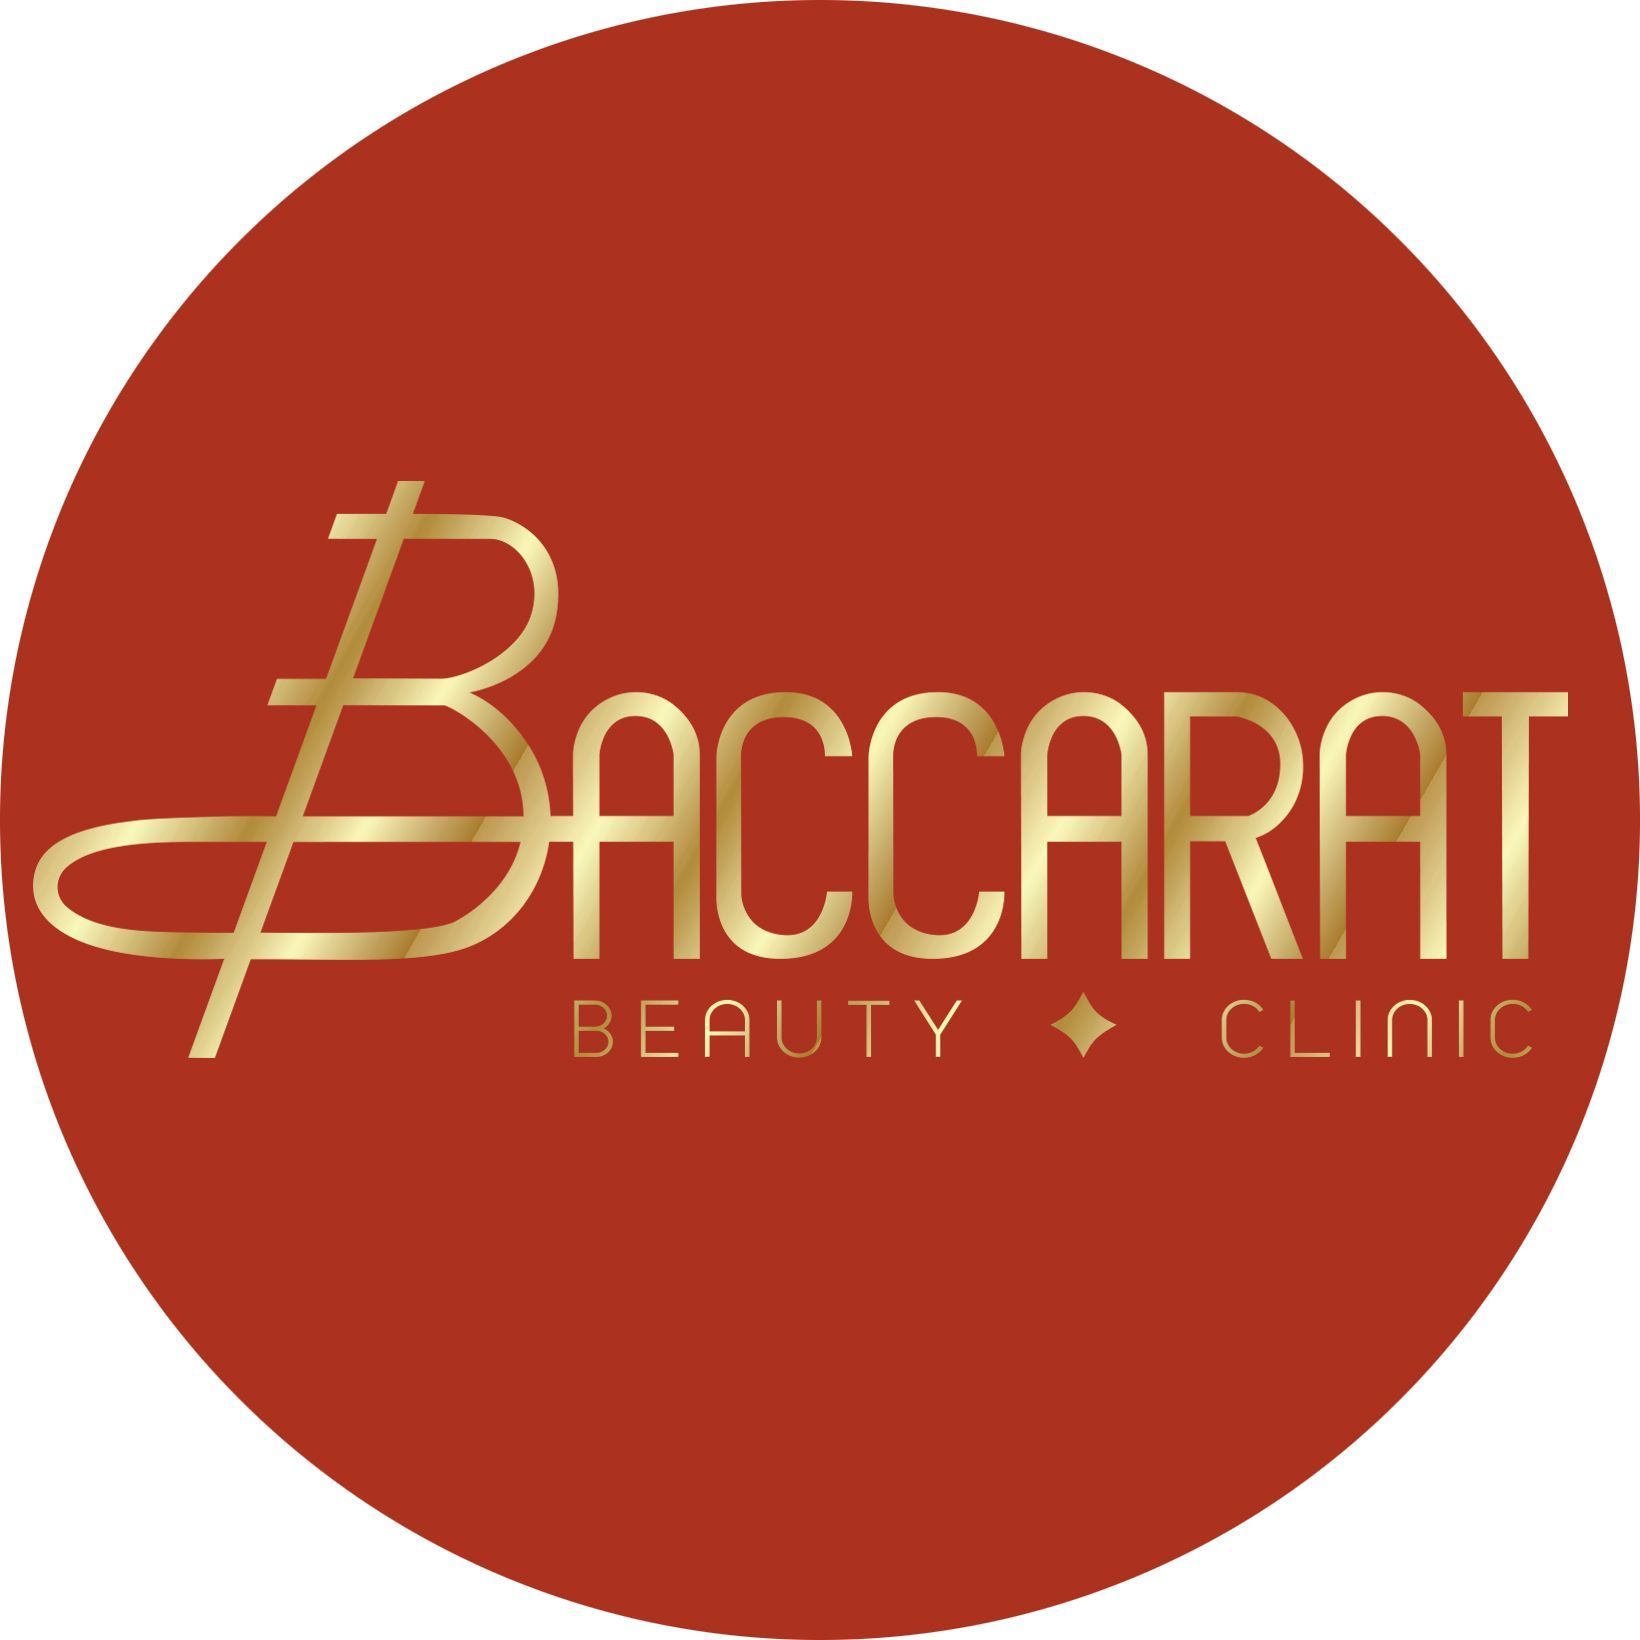 Baccarat Beauty Clinic, Stare Nalewki 4, L102, 00-242, Warszawa, Śródmieście